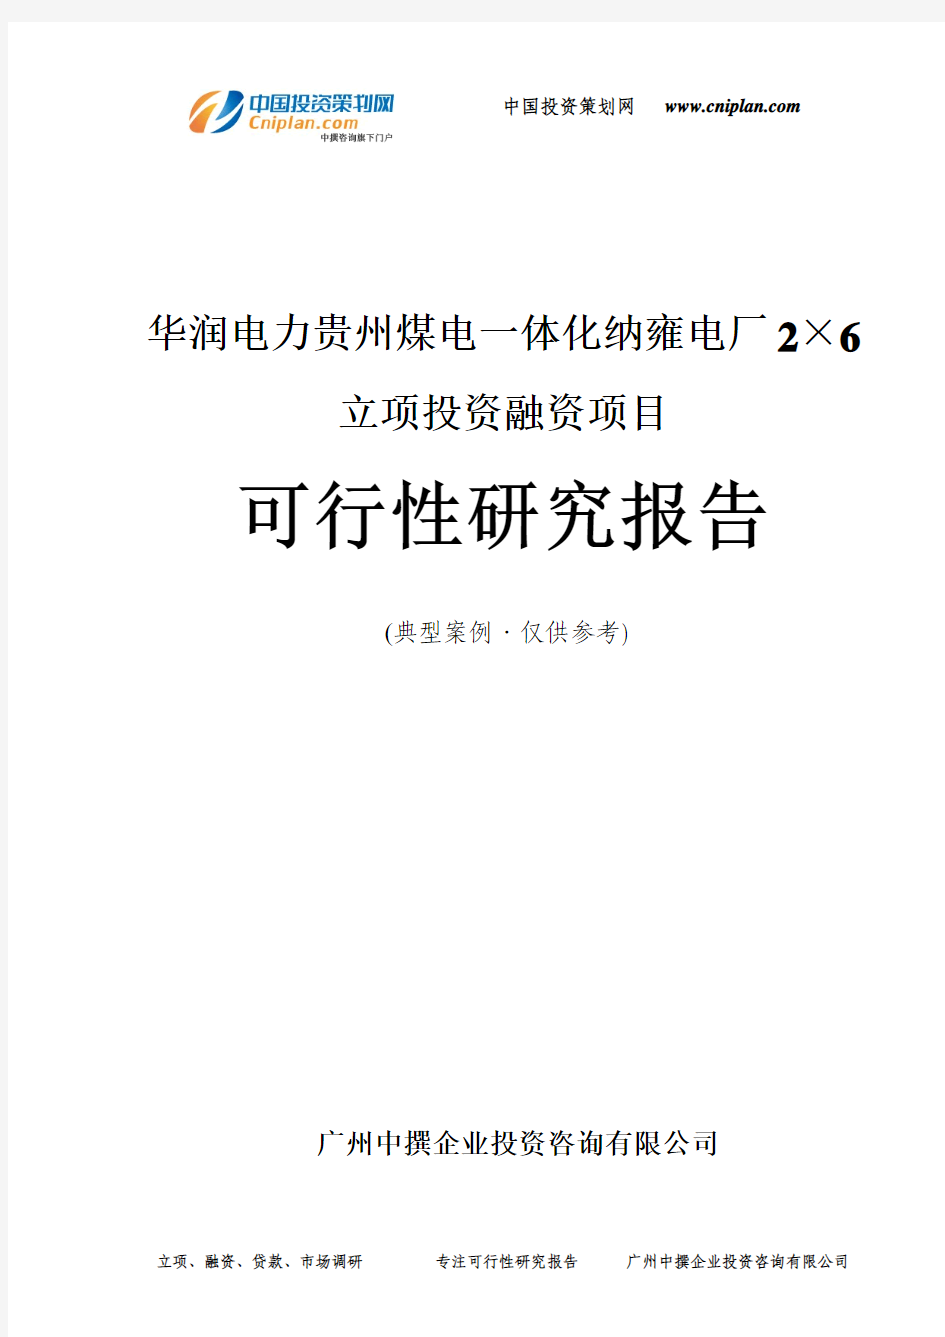 华润电力贵州煤电一体化纳雍电厂2×6融资投资立项项目可行性研究报告(中撰咨询)